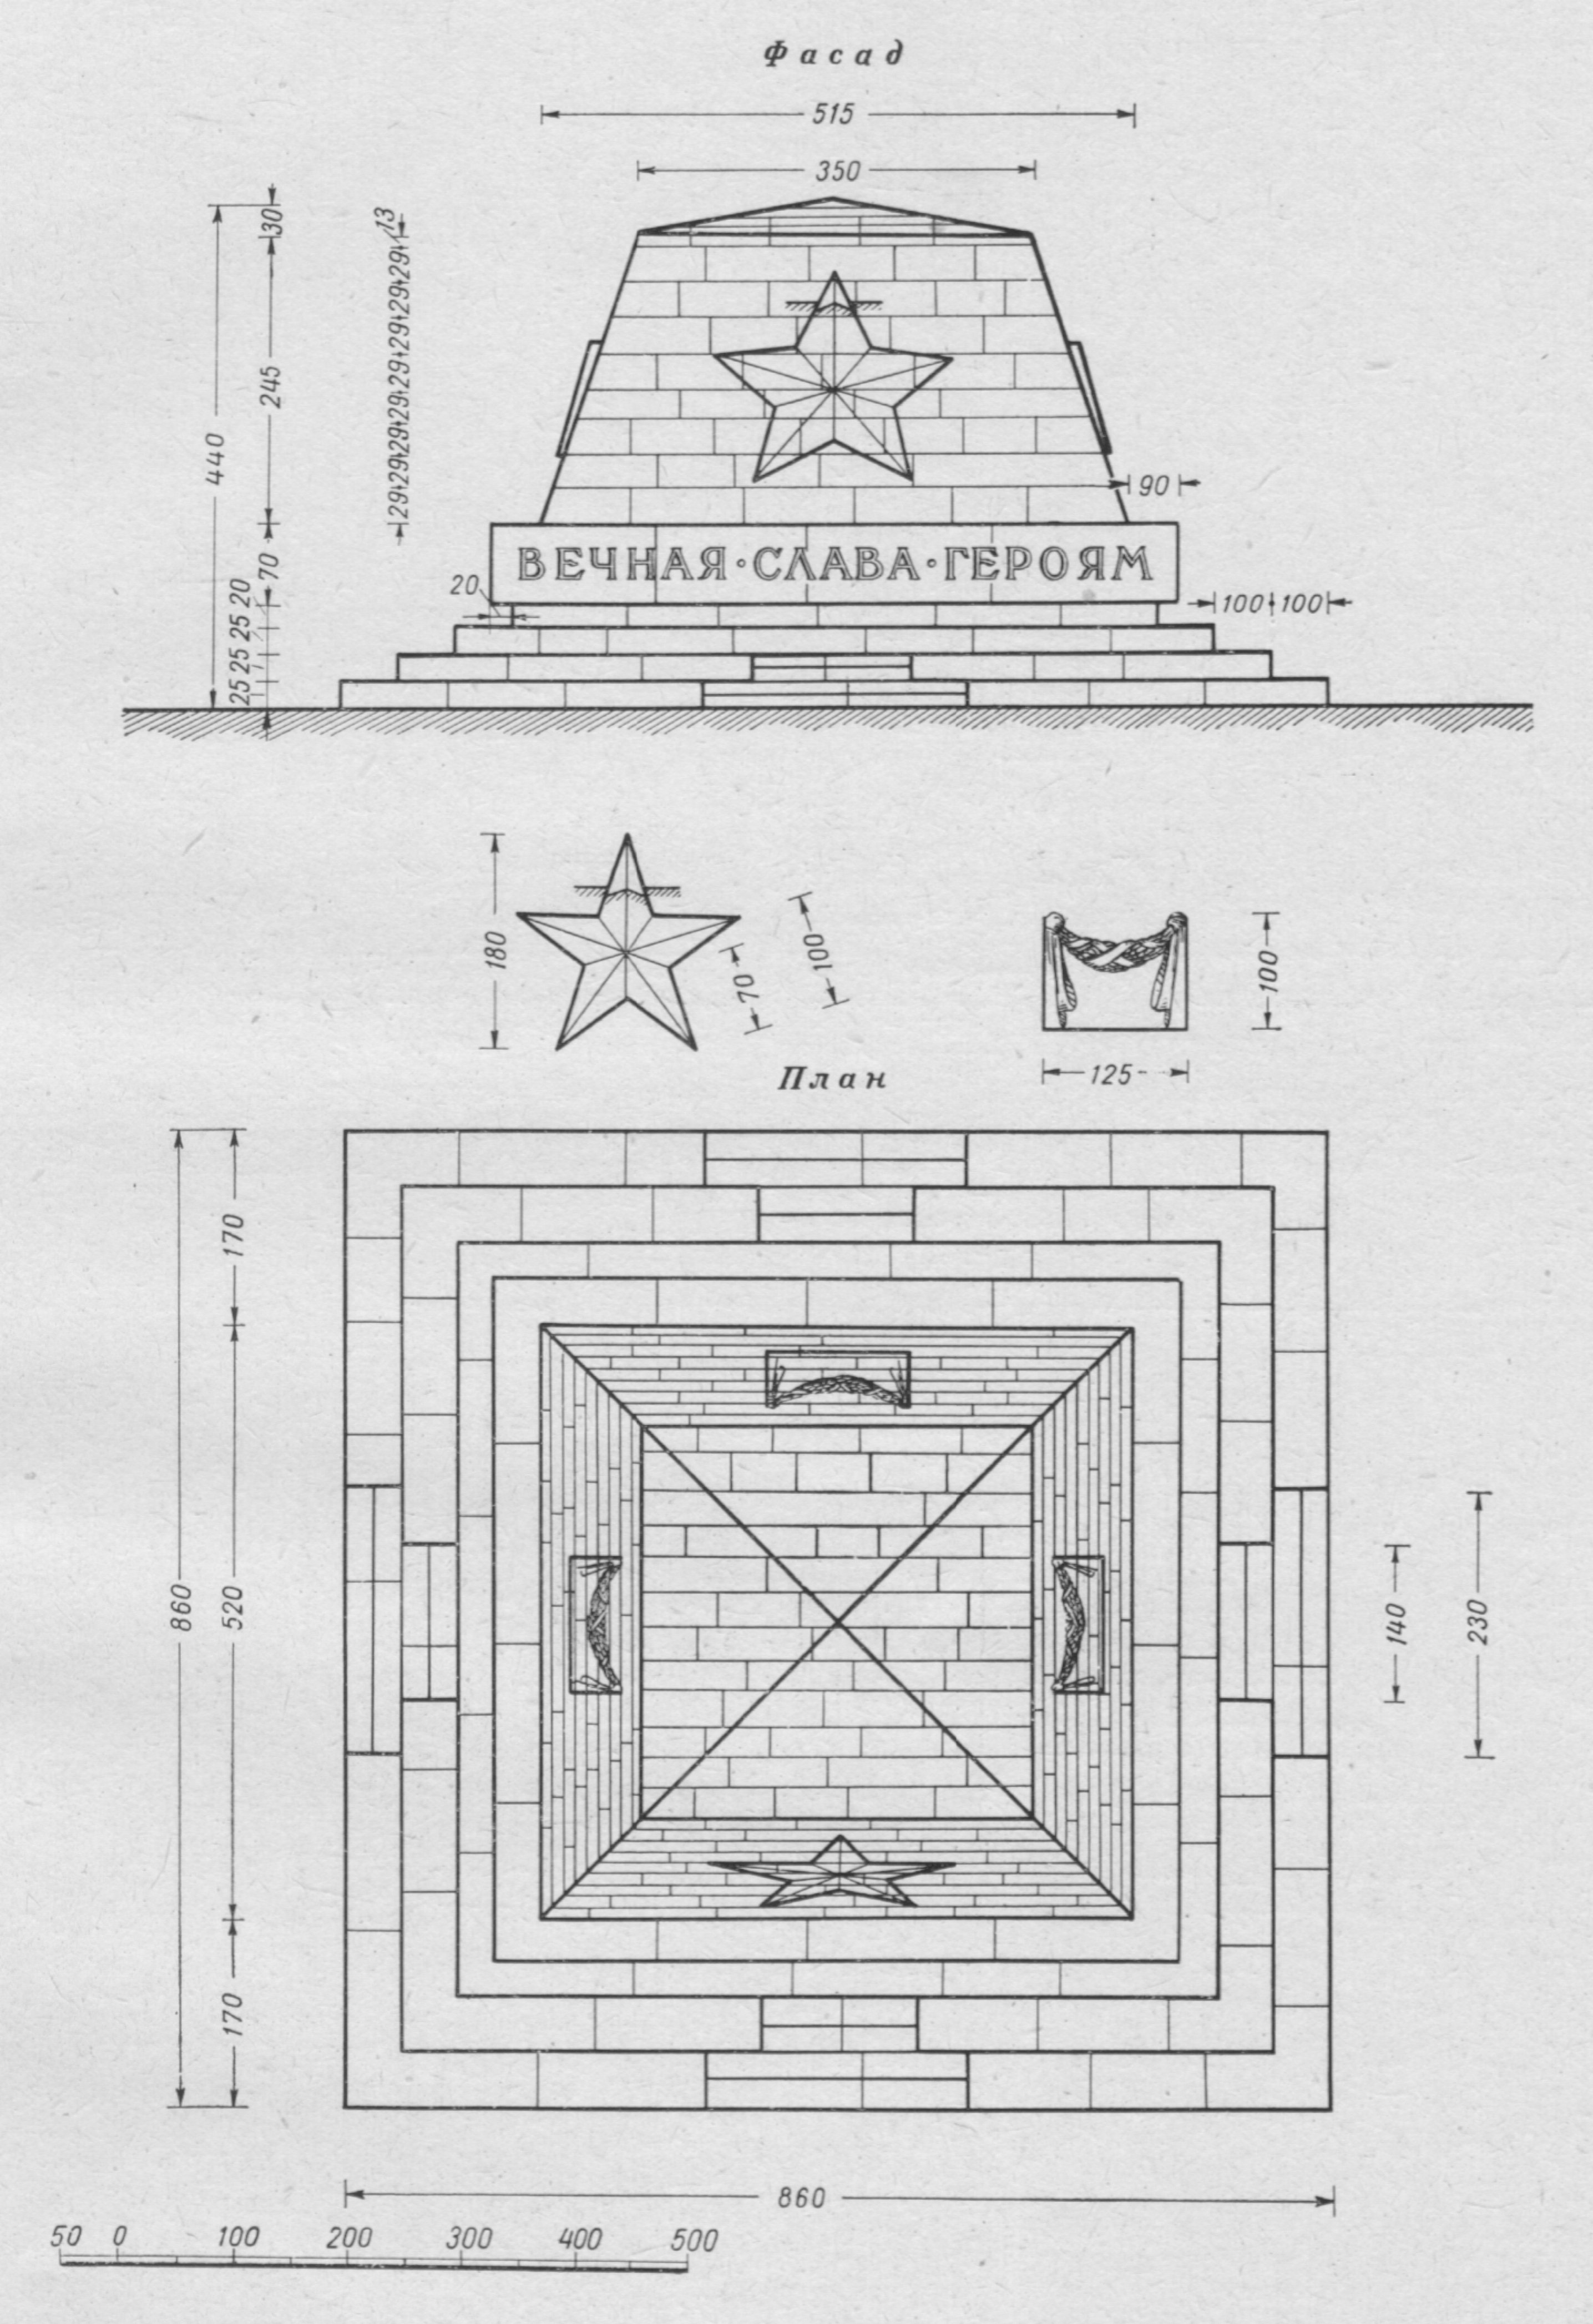 ПРОЕКТ 31. Архитекторы БАЛТЕР, В. И. и ГЛАЗОВА, Т. С. Памятник представляет усечённую пирамиду, поставленную на ступенчатое основание